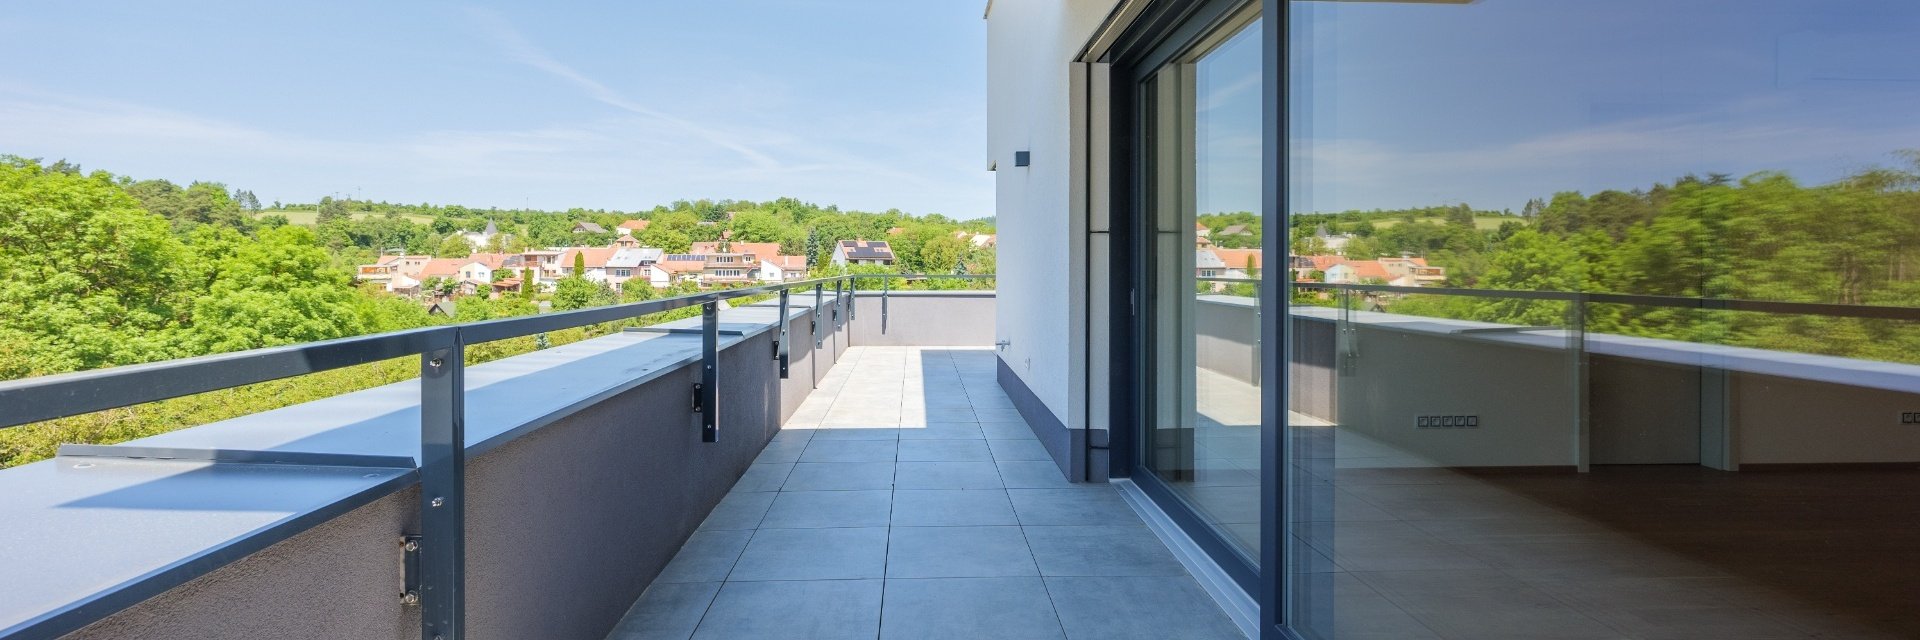 Prodej bytu 3+kk s terasou, 172m² Rezidence Bavaria